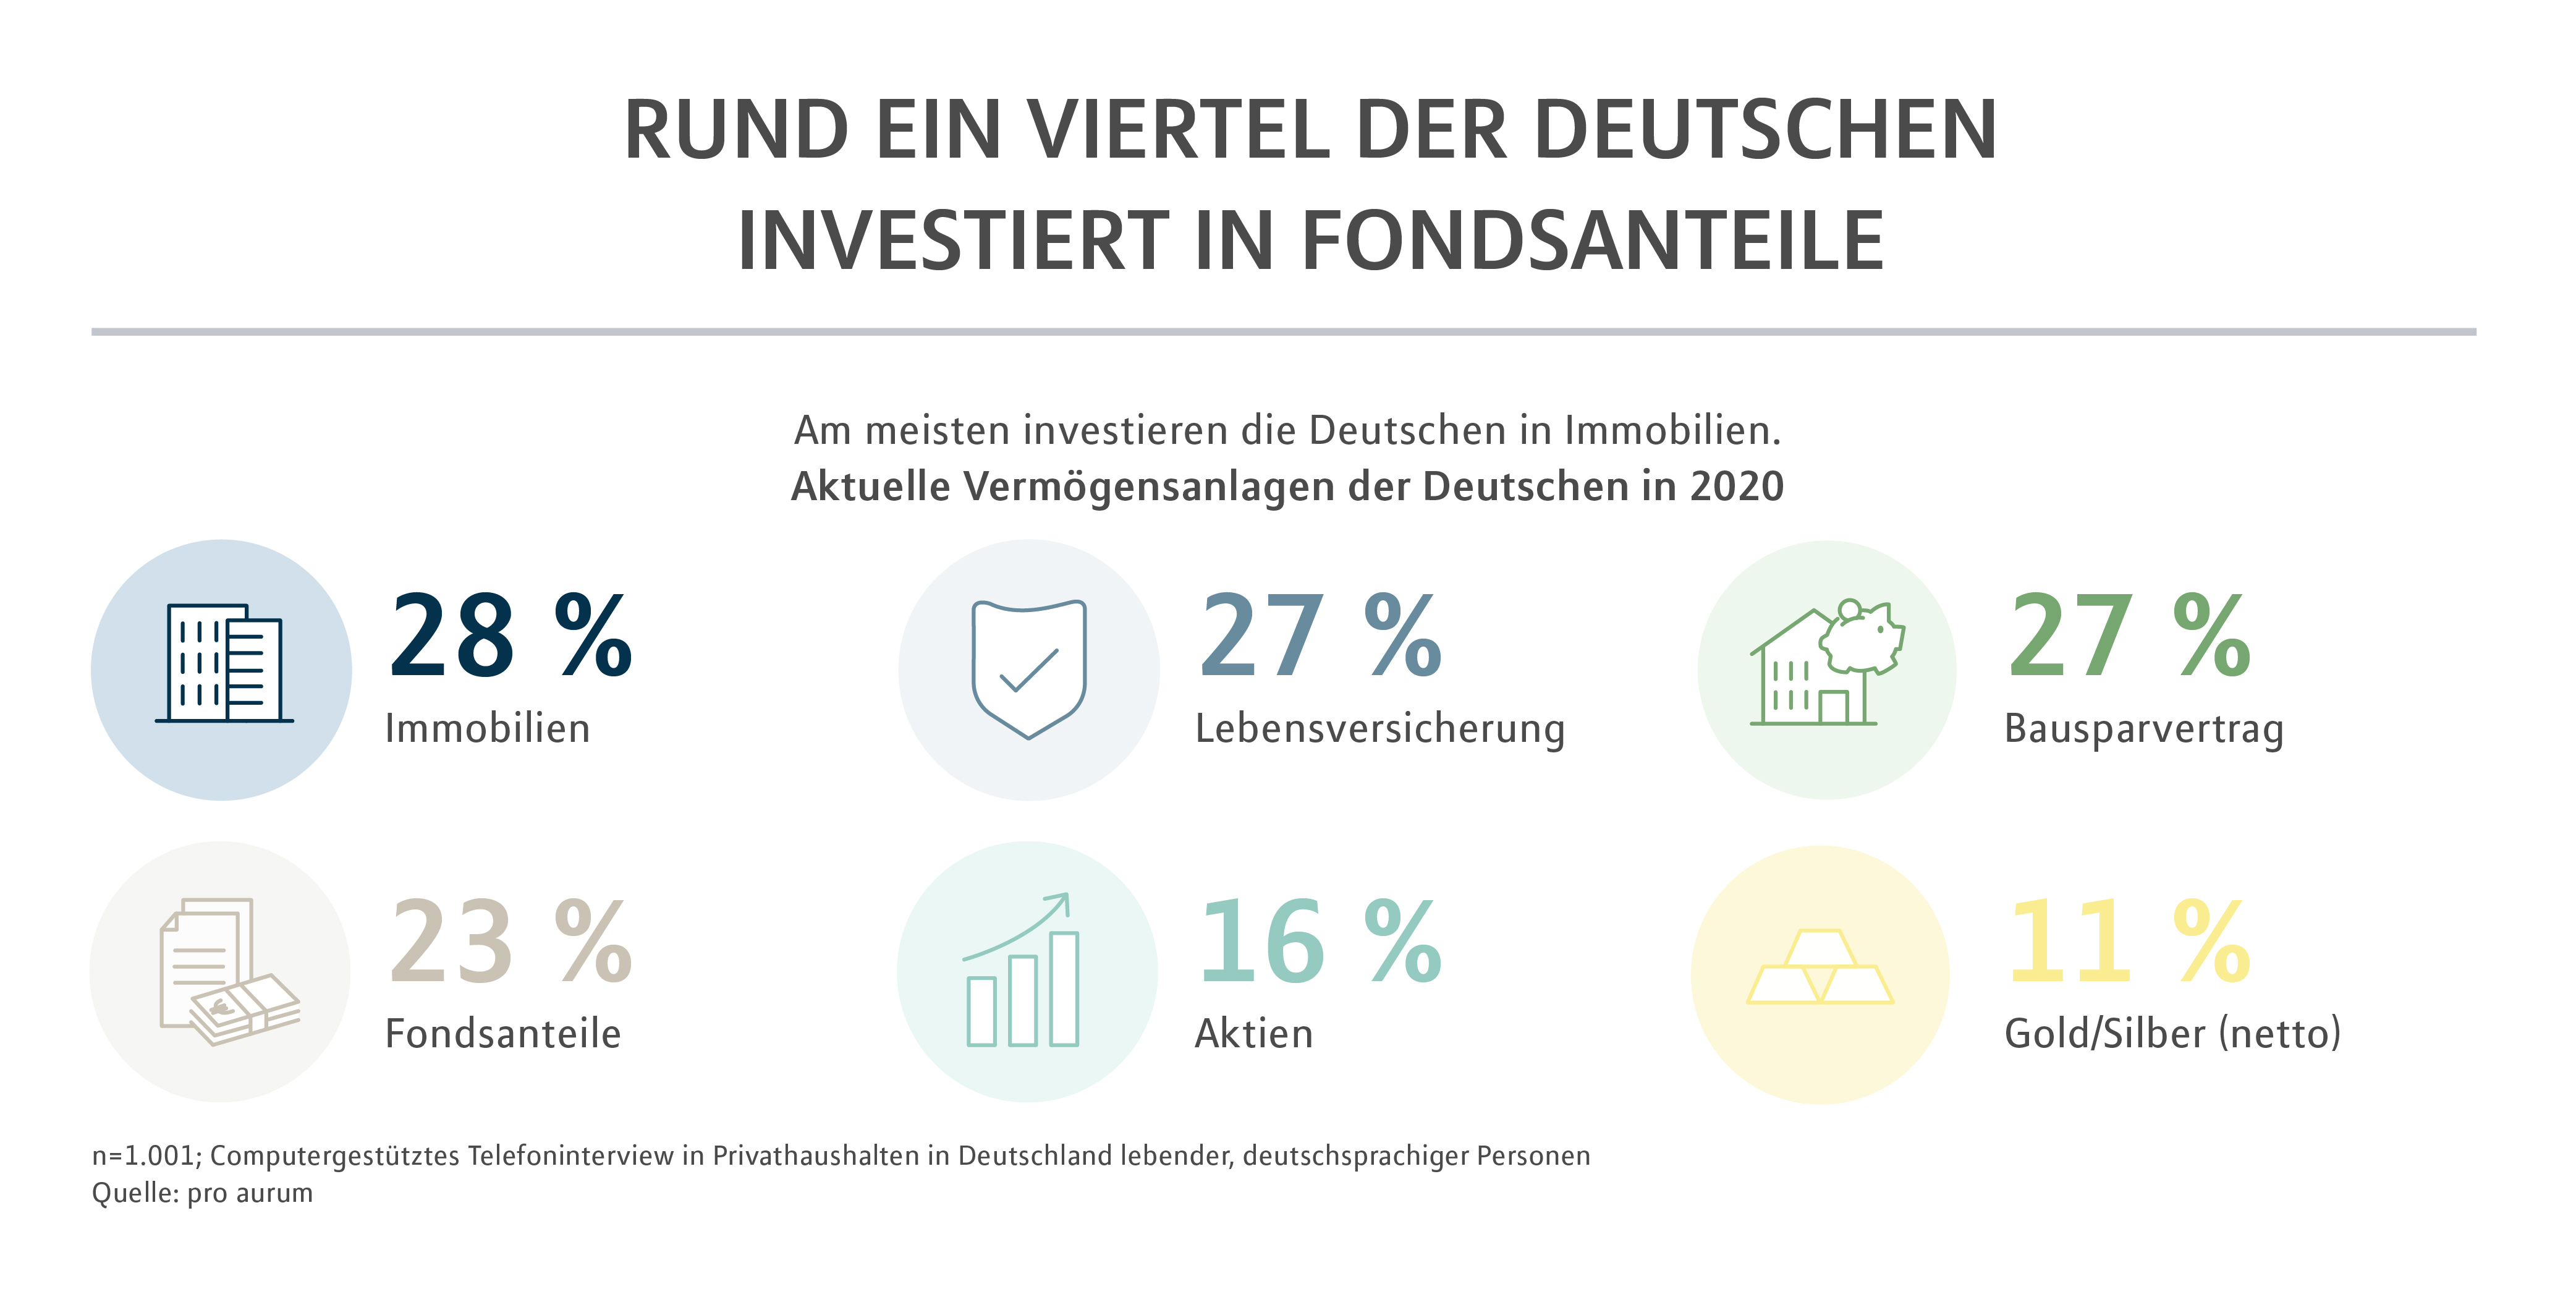 Rund ein Viertel der Deutschen investiert in Fondsanteile